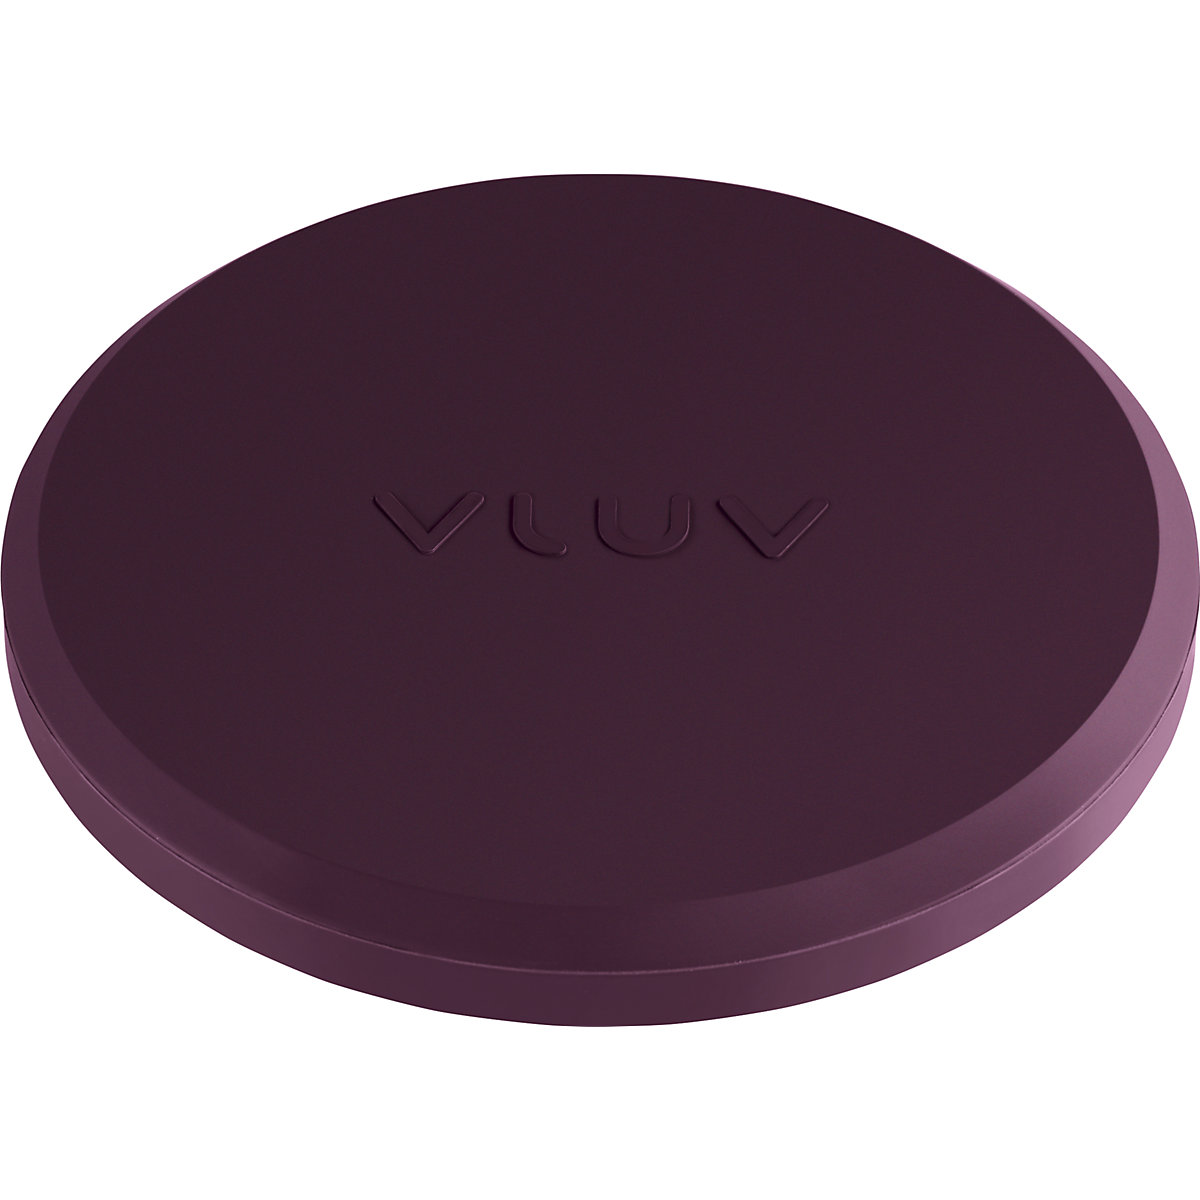 VLUV UPP Gewicht aus Gummi, zur Stabilisation, Ø 180 mm, brombeer